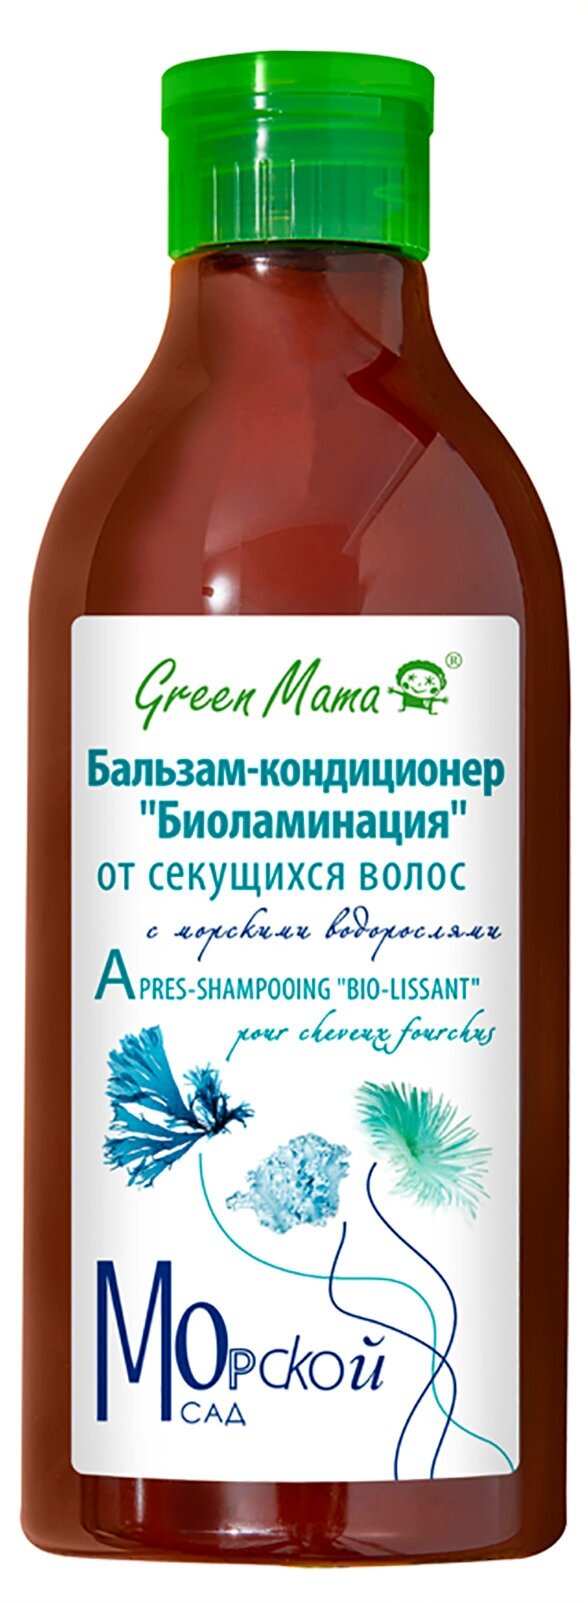 Бальзам-кондиционер Green Mama от секущихся волос с морскими водорослями Биоламинация, 400 мл - фото №5